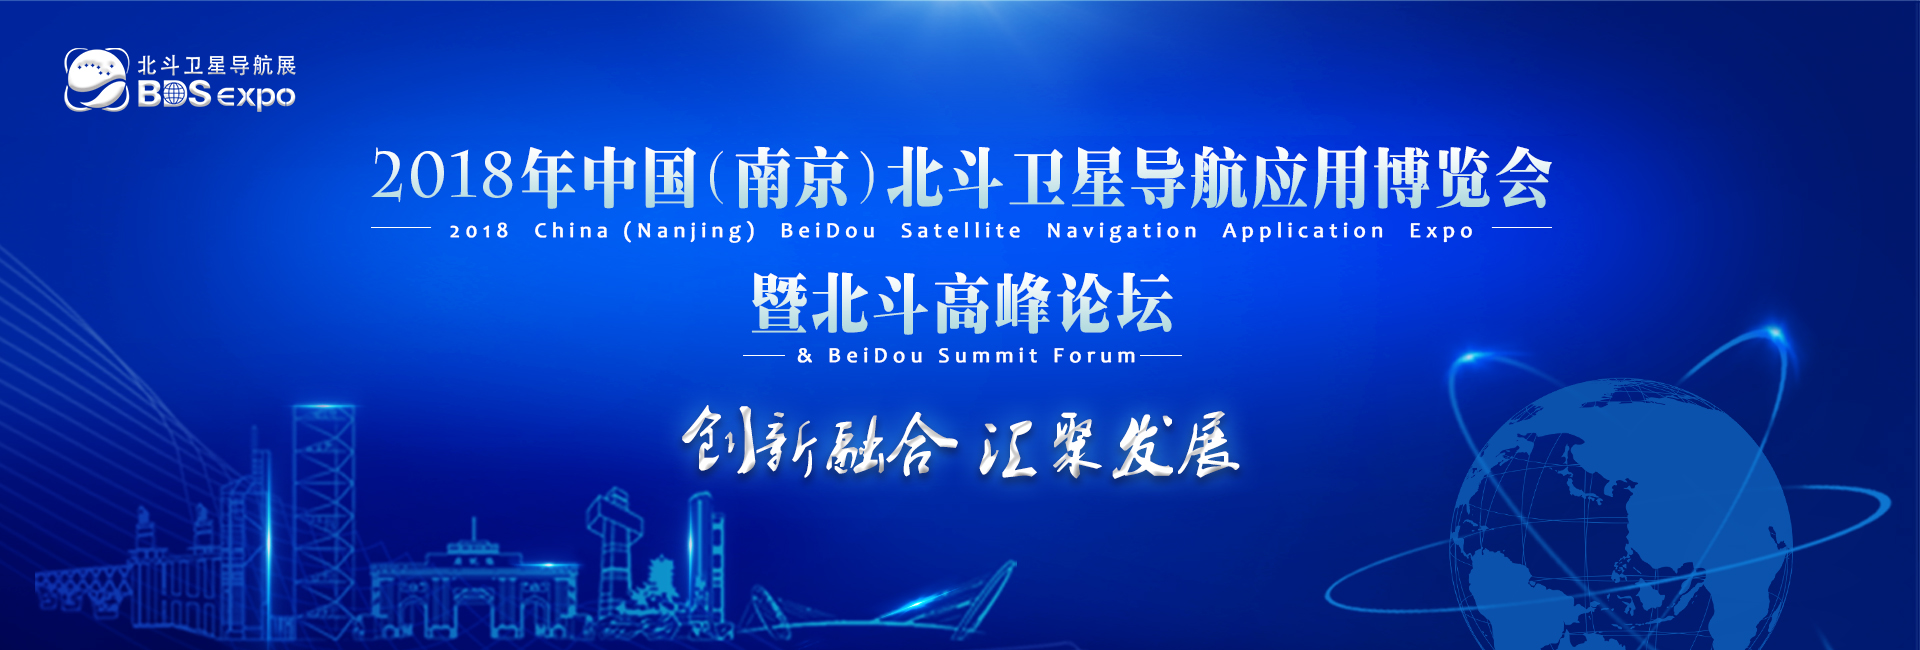 2018中国(南京)北斗卫星导航应用博览会